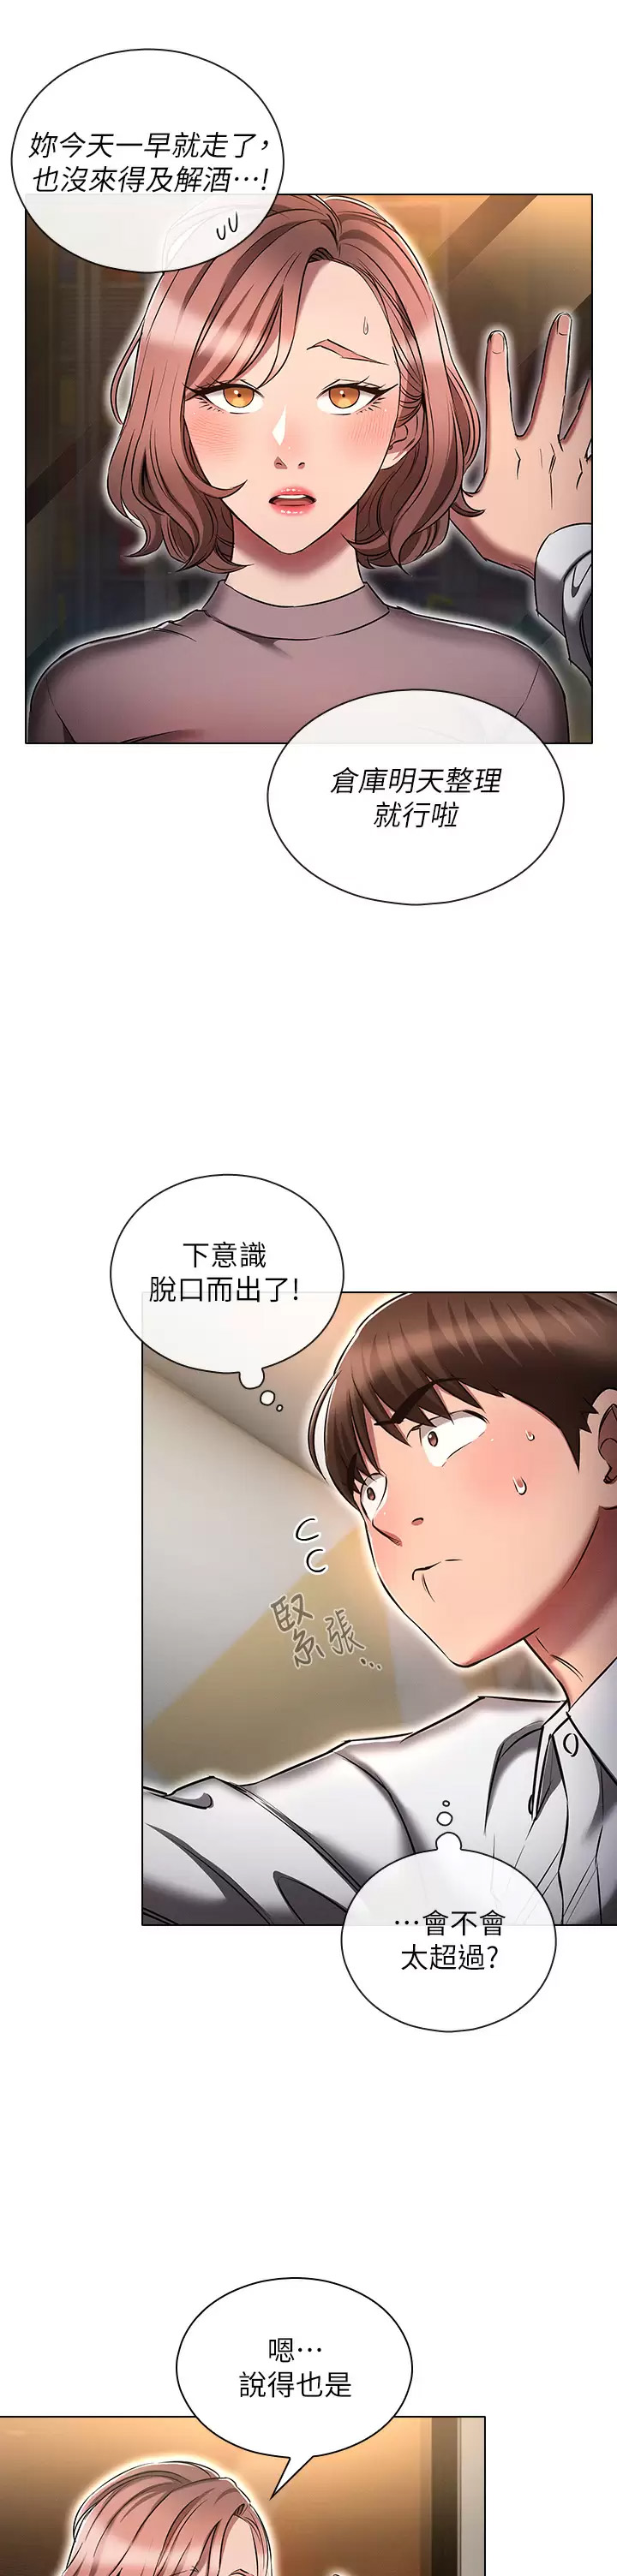 韩国污漫画 魯蛇的多重宇宙 第13话 满溢的暧昧情欲 5